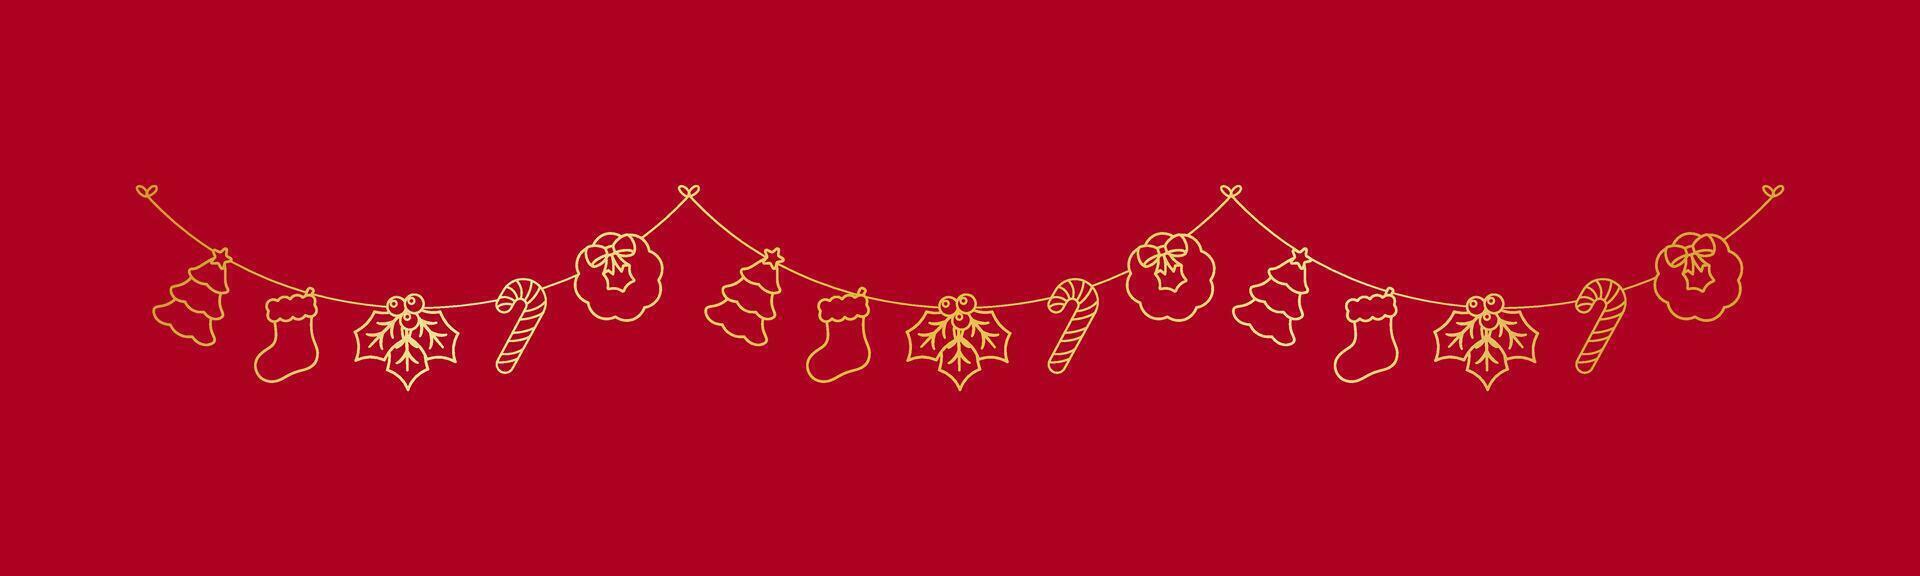 oro Navidad guirnalda contorno garabatear vector ilustración, Navidad gráficos para niños, festivo invierno fiesta temporada verderón